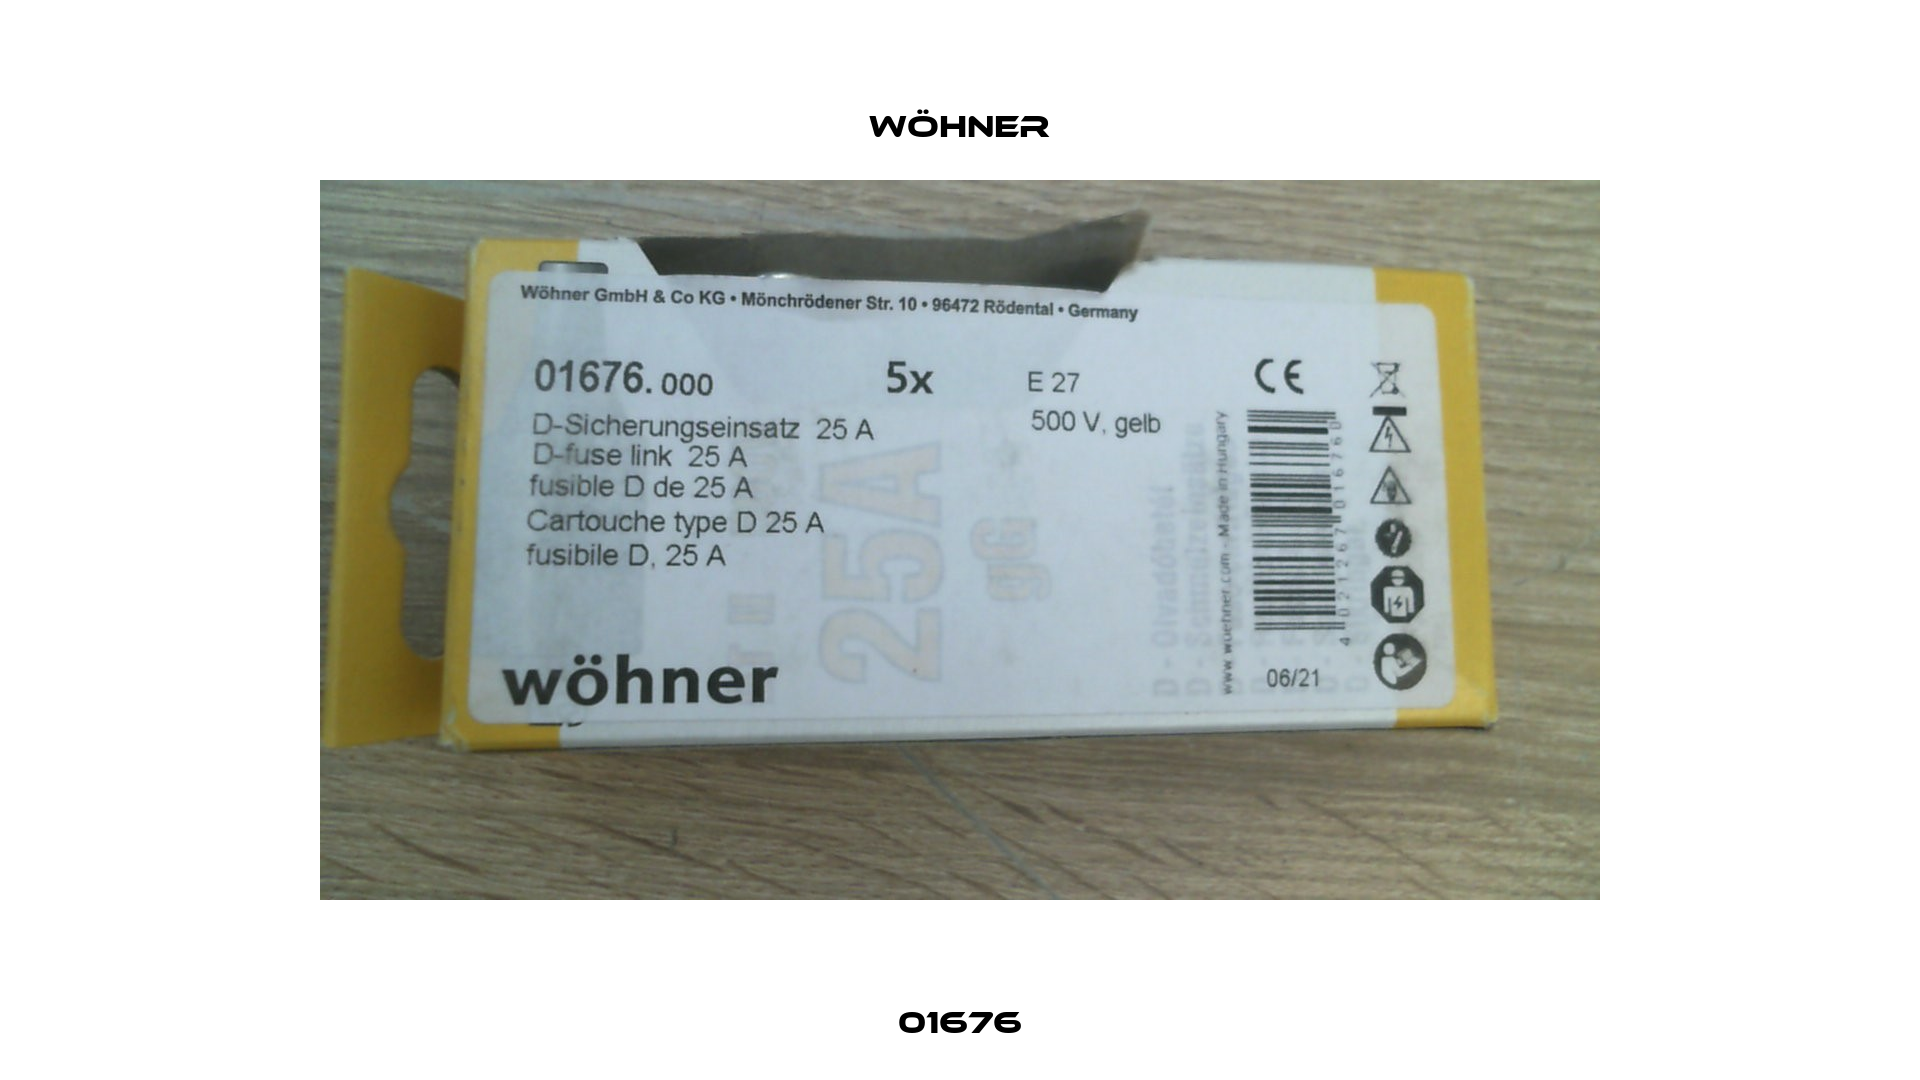 01676 Wöhner